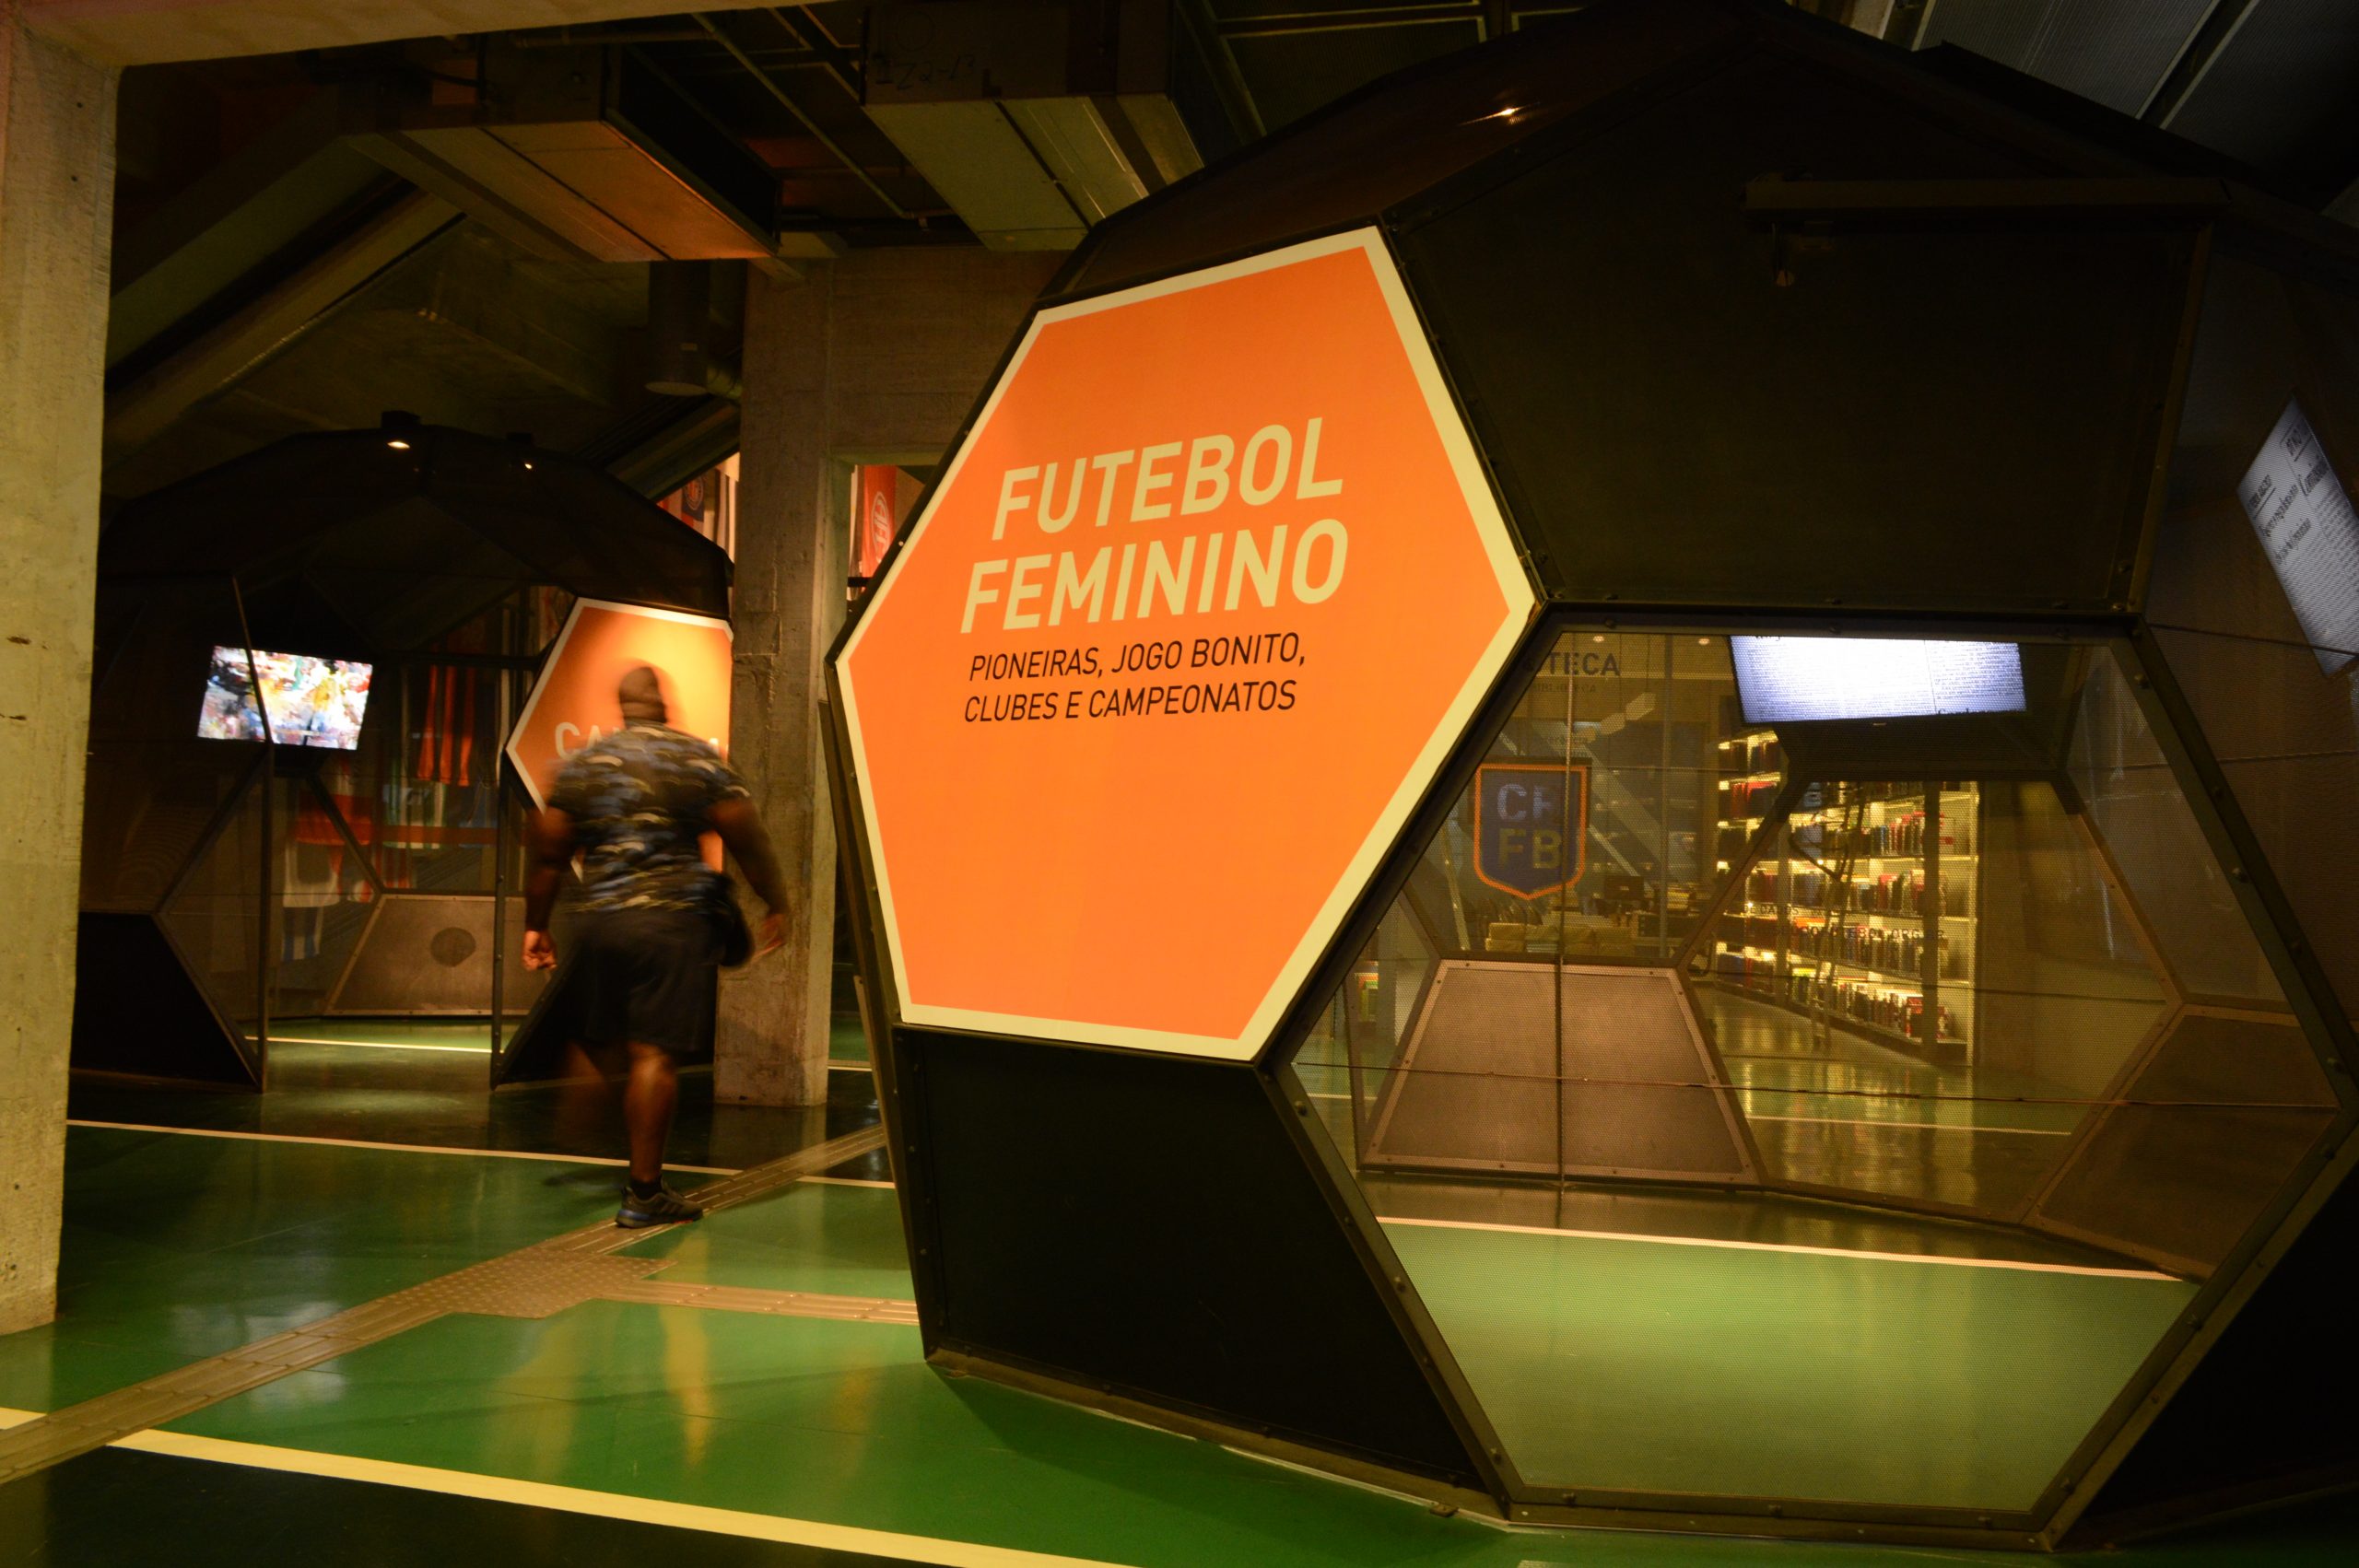 Foto de um ambiente do Museu do Futebol com uma estrutura metálica de formas hexagonais, dentro das quais há telas de TV. Na primeira delas lemos numa grande placa a frase "Futebol Feminino"